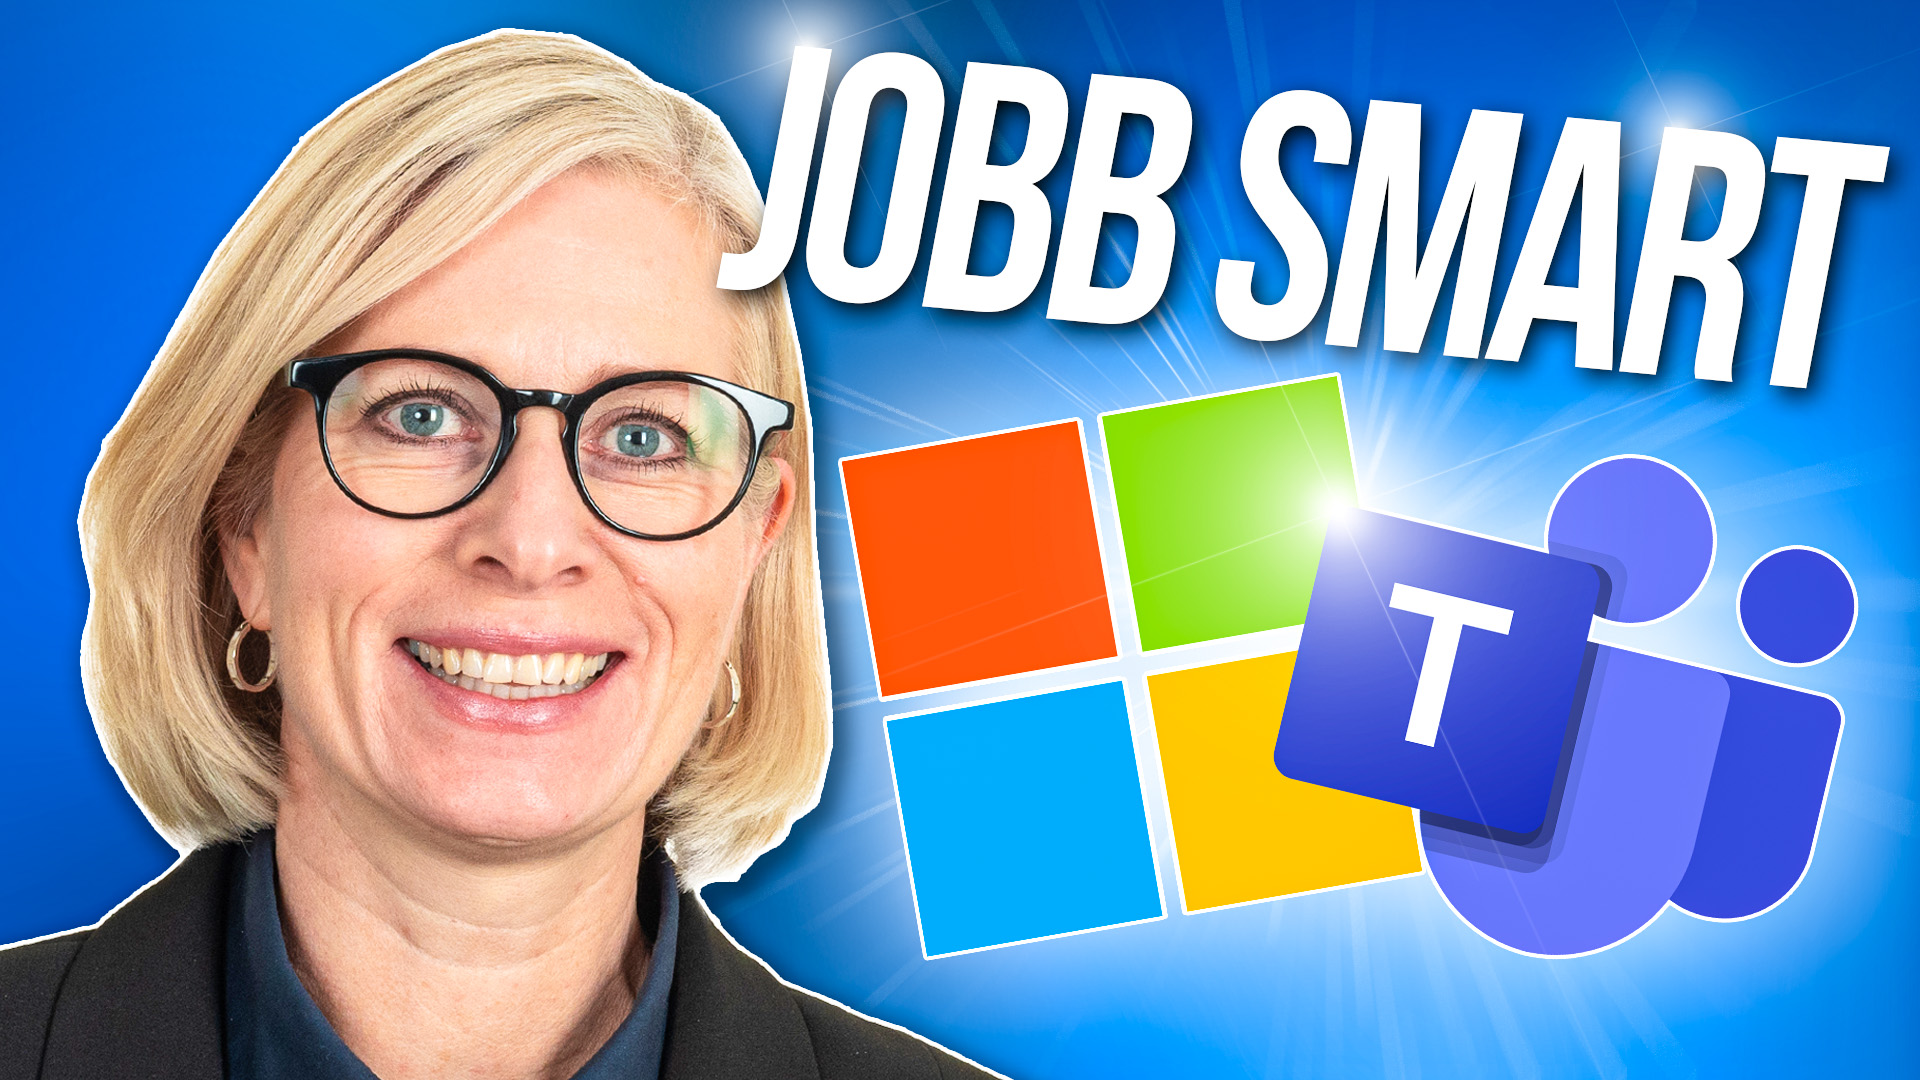 Jobbe smart i Microsoft365 og Teams nyheter